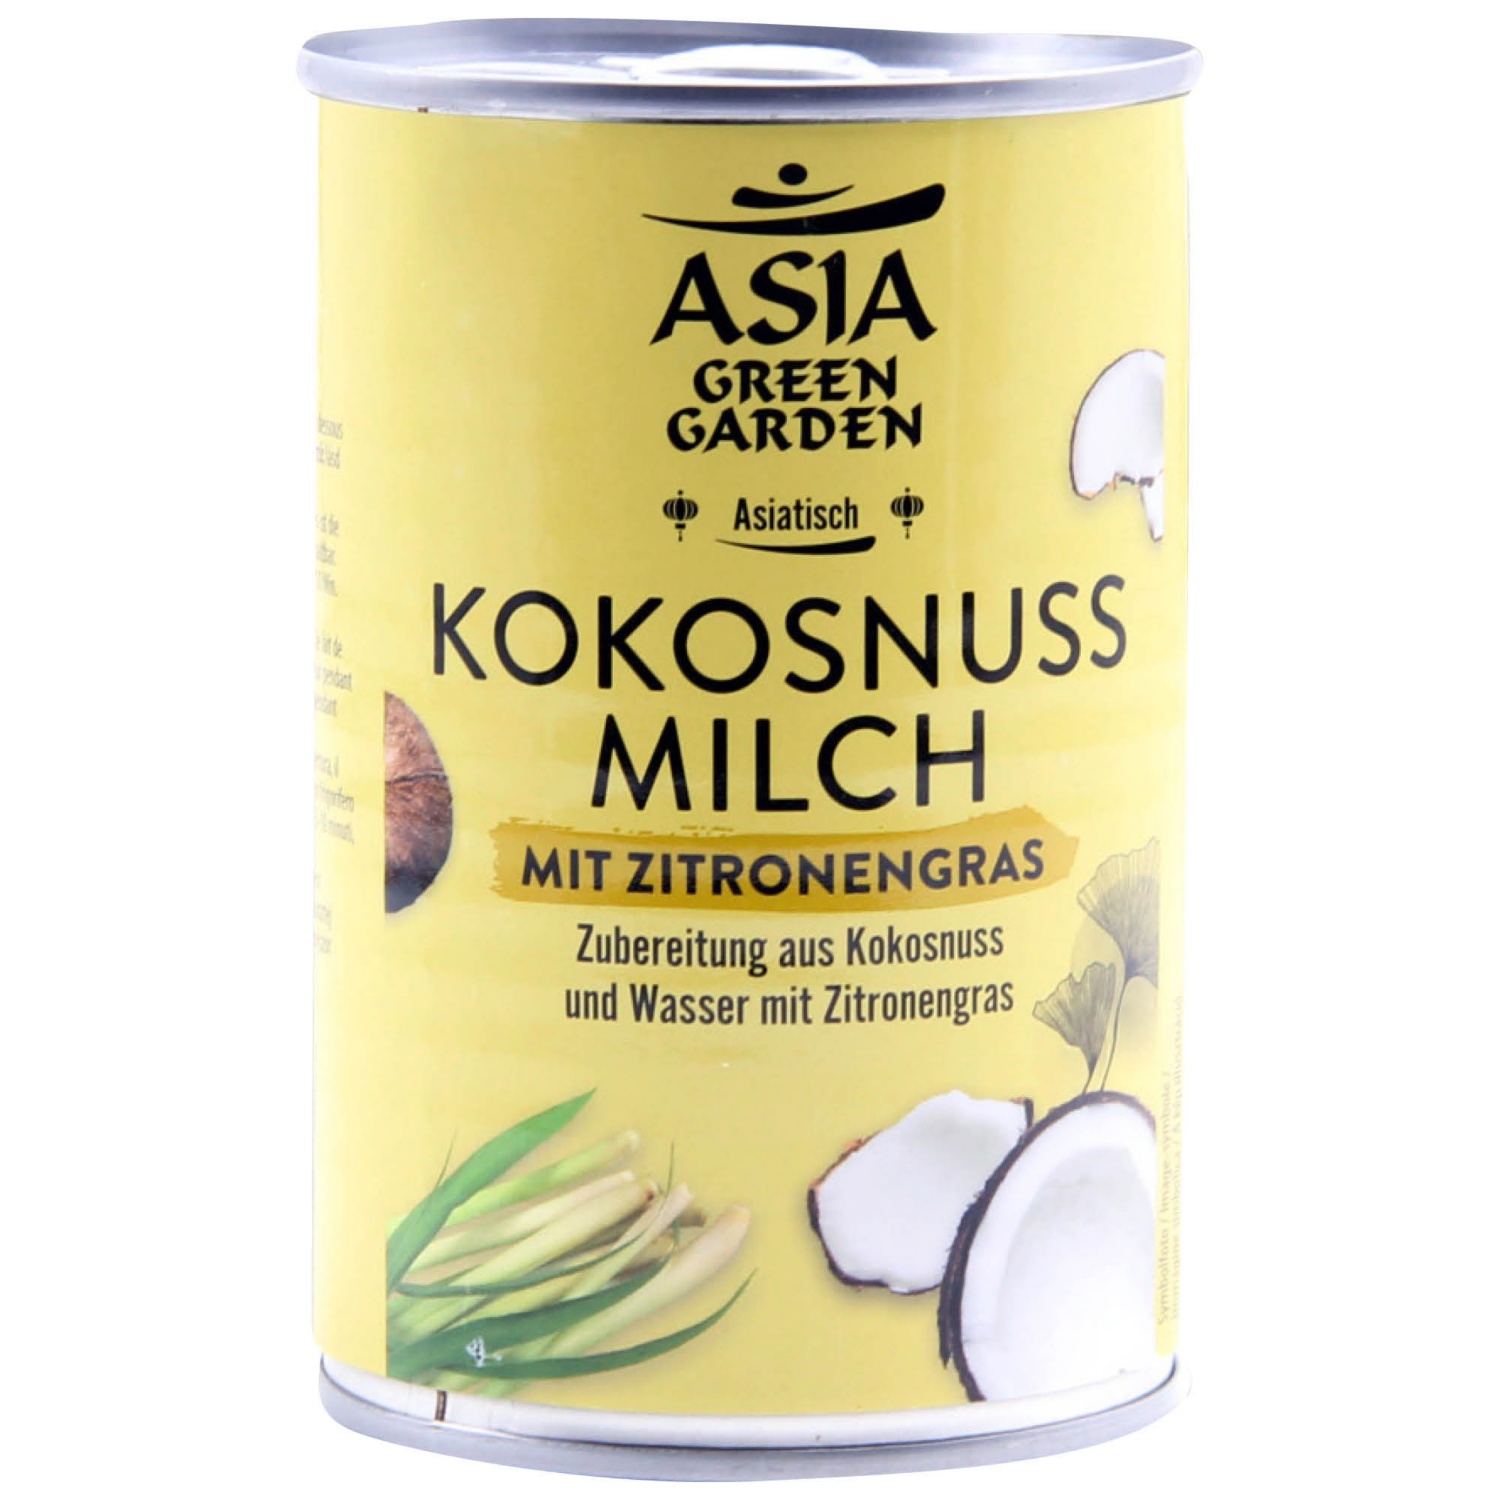 ASIA Aromatisierte Kokosmilch, Zitronengras